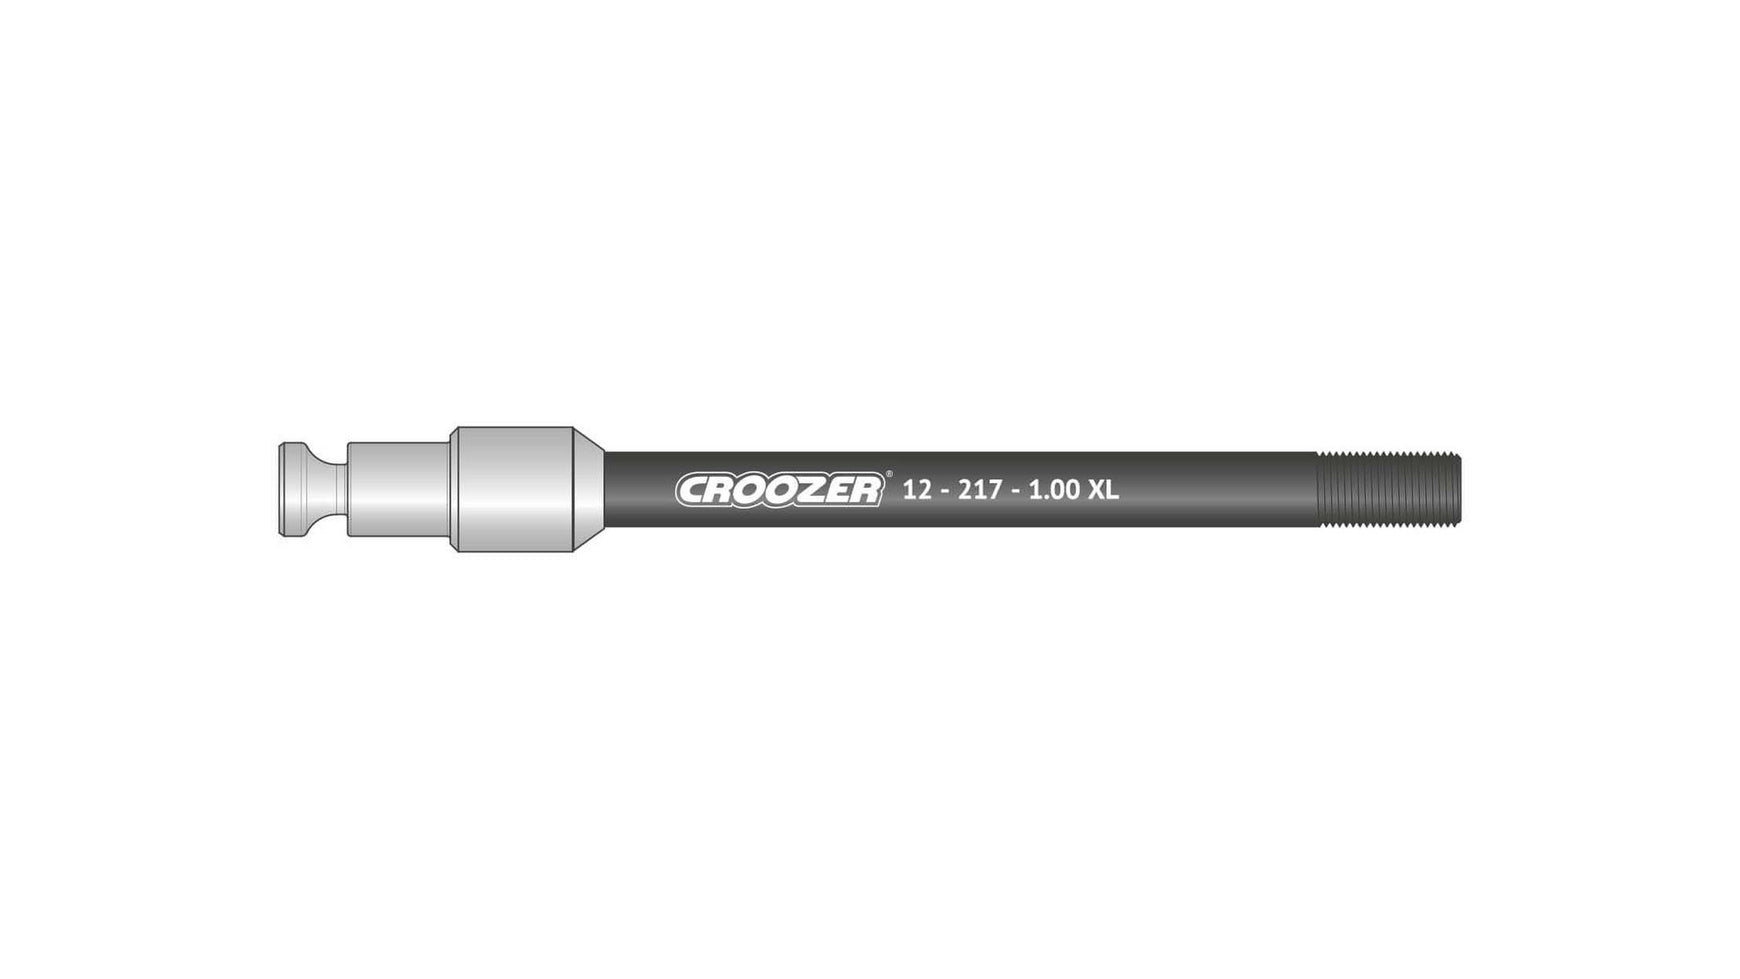 Croozer 12-217-1.00 XL von CROOZER